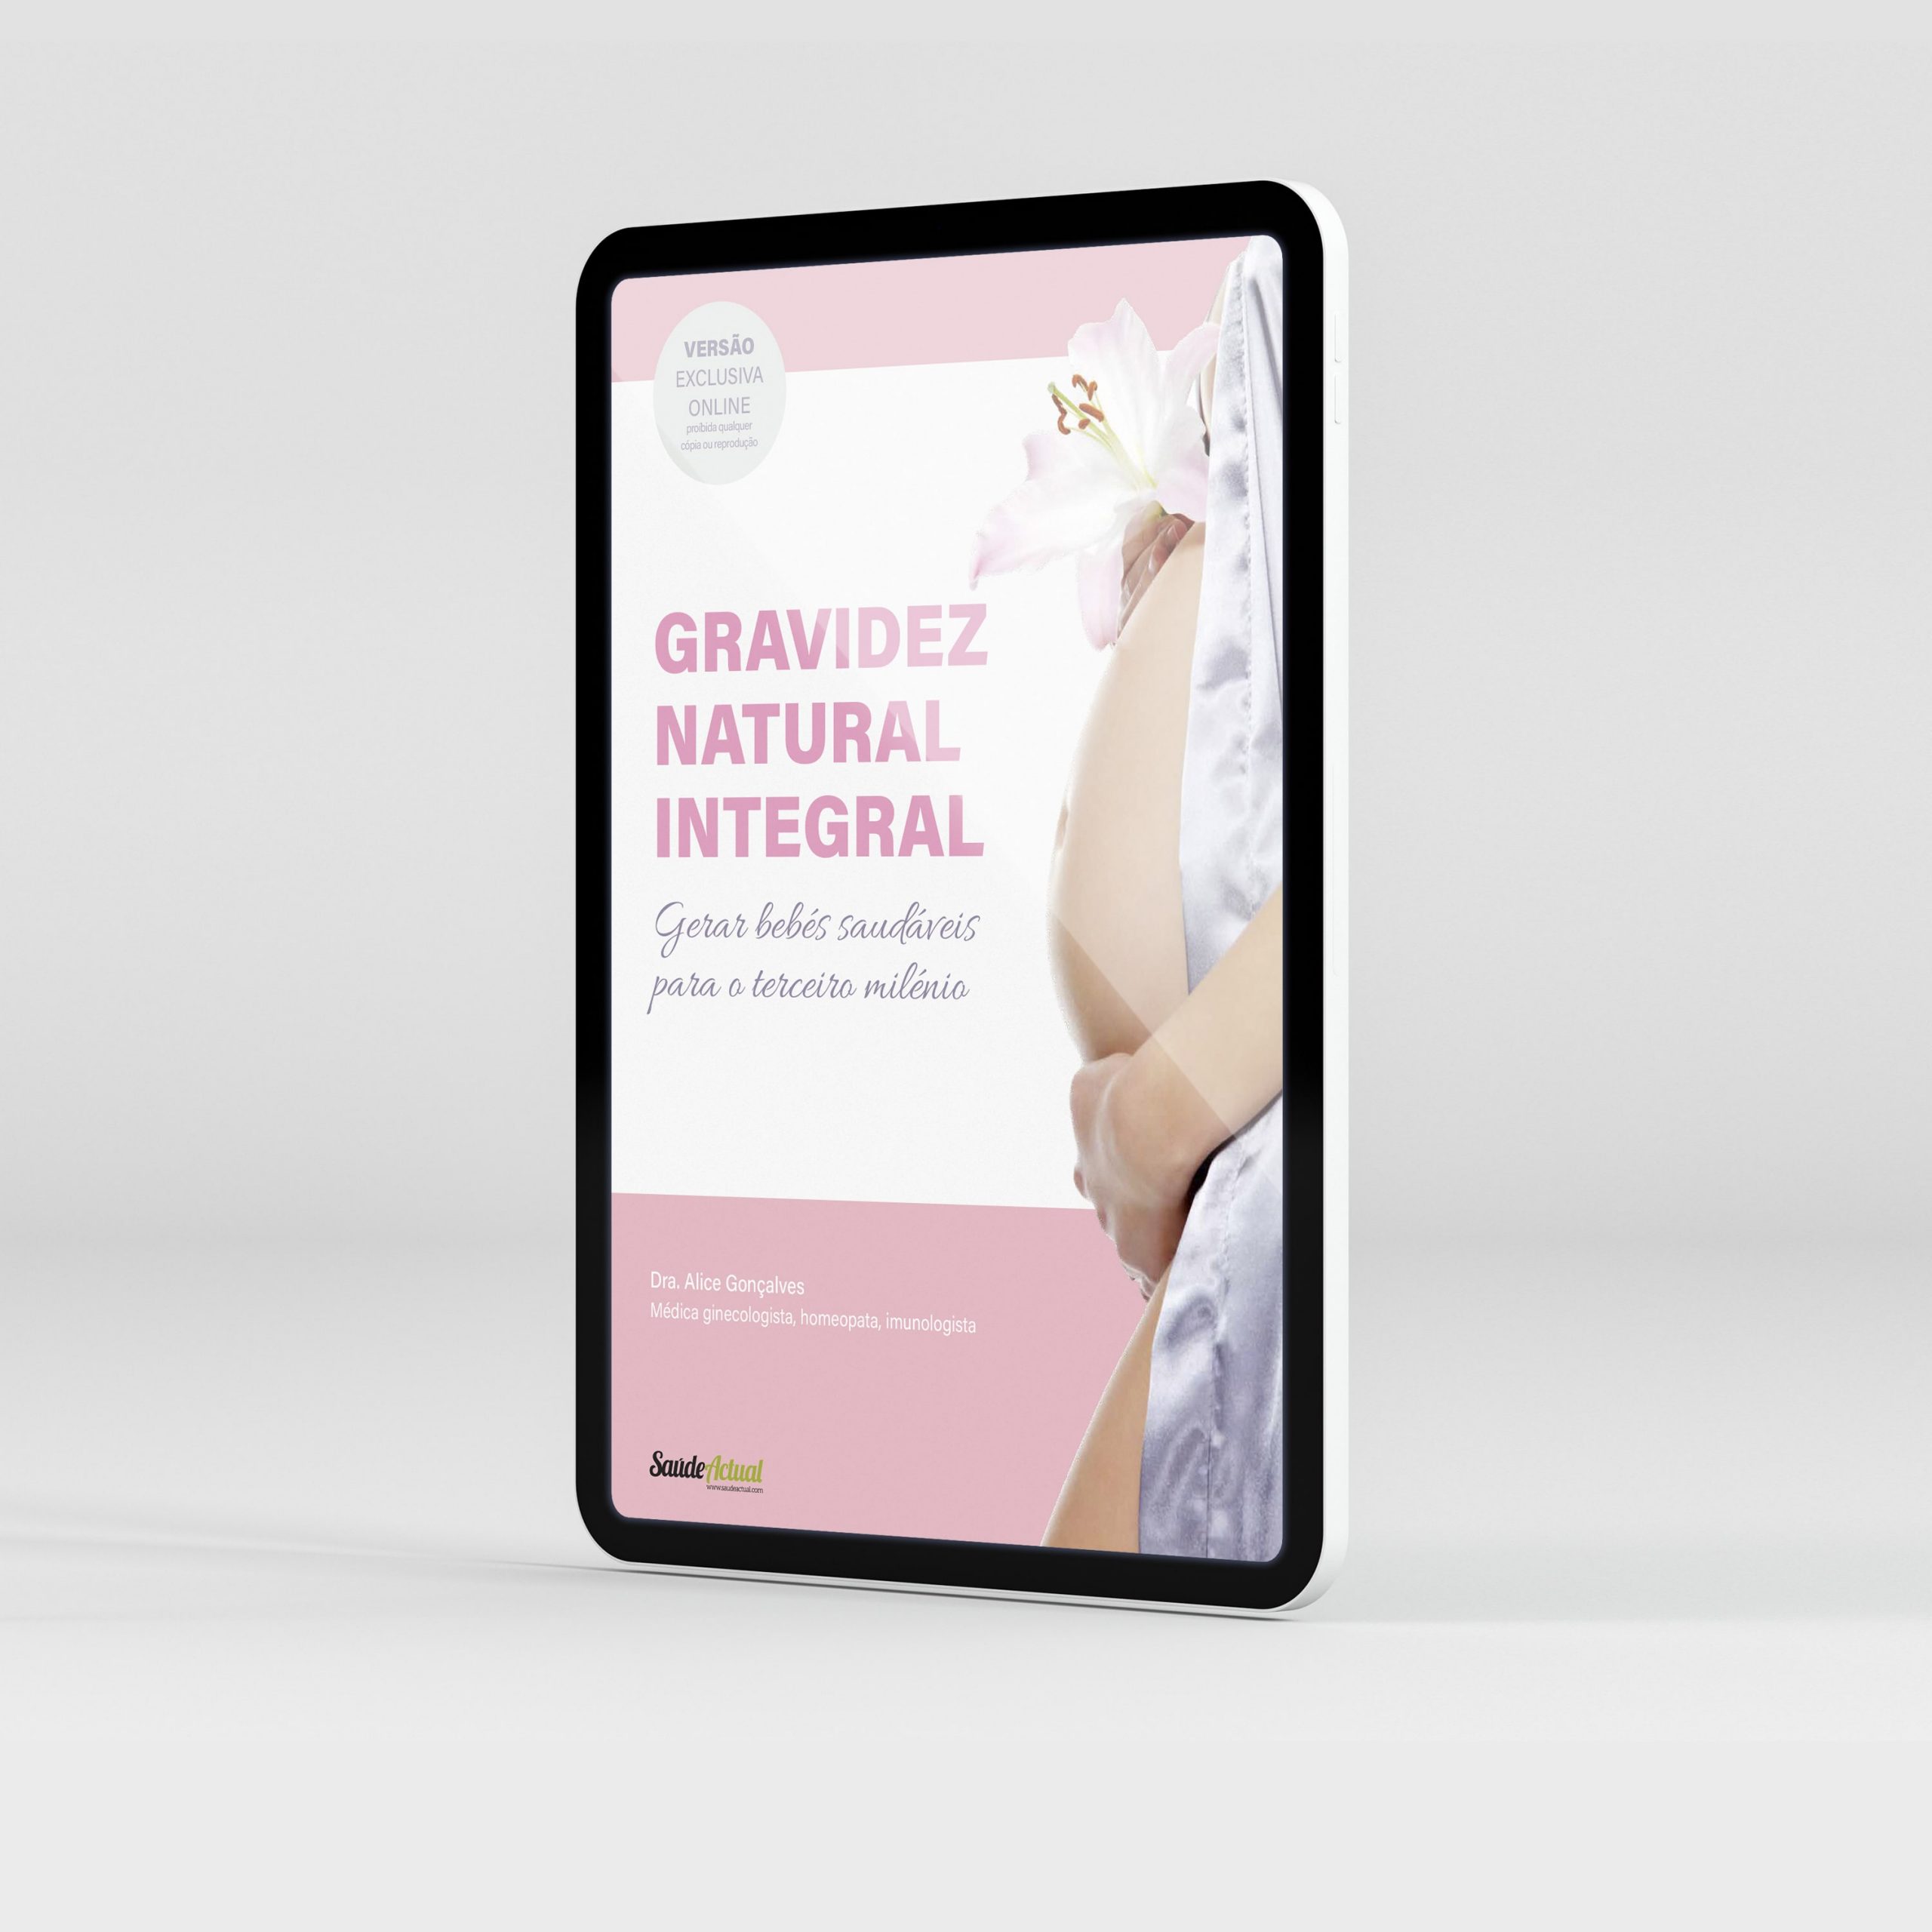 Capa tablet do Livro: versao online - Gravidez Natural Integral por Dra. Alice Gonçalves